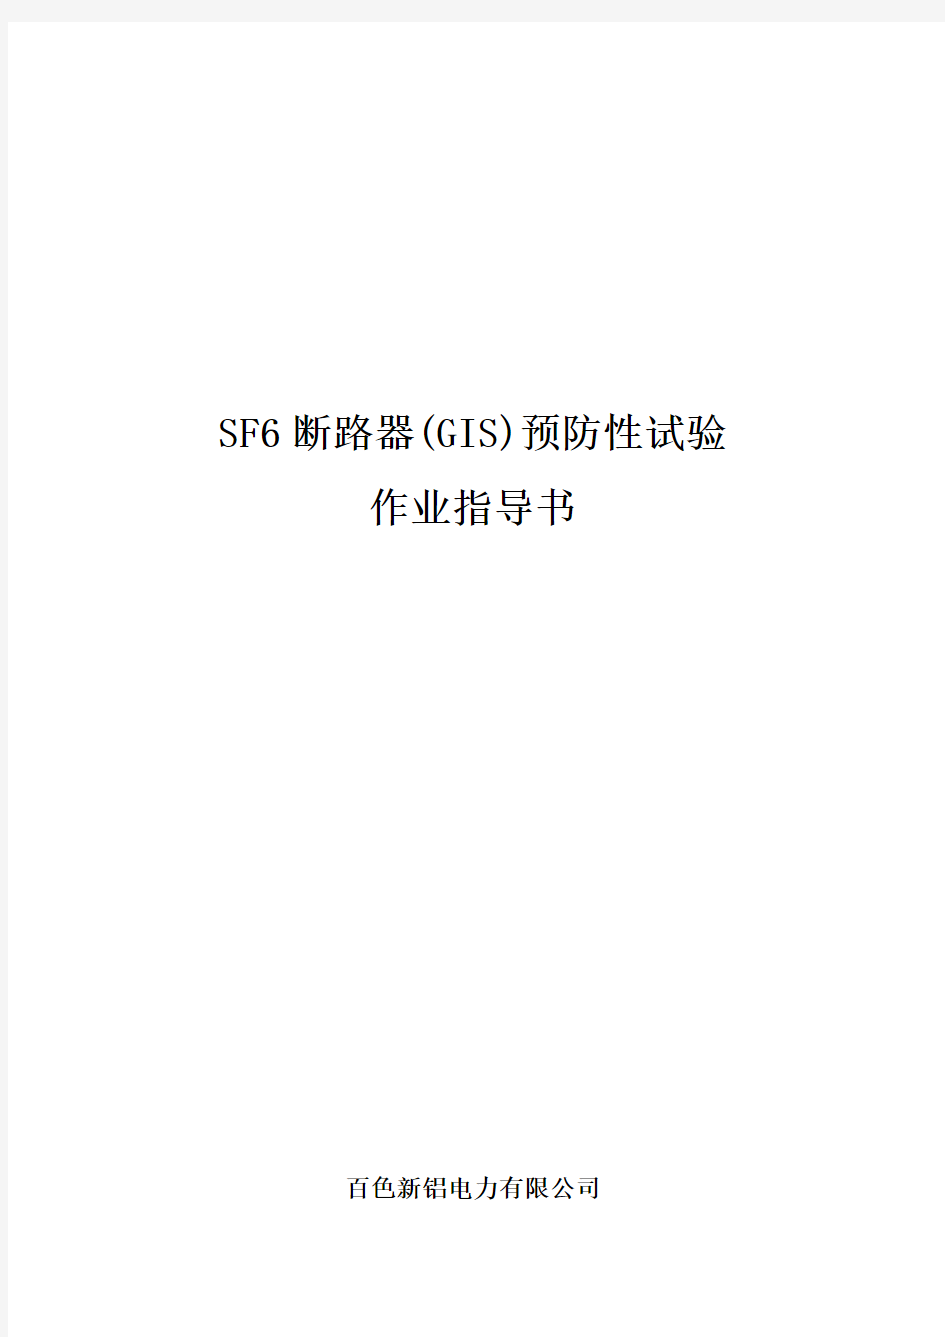 SF6断路器(含GIS)预防性试验作业指导书[QXL-2015]